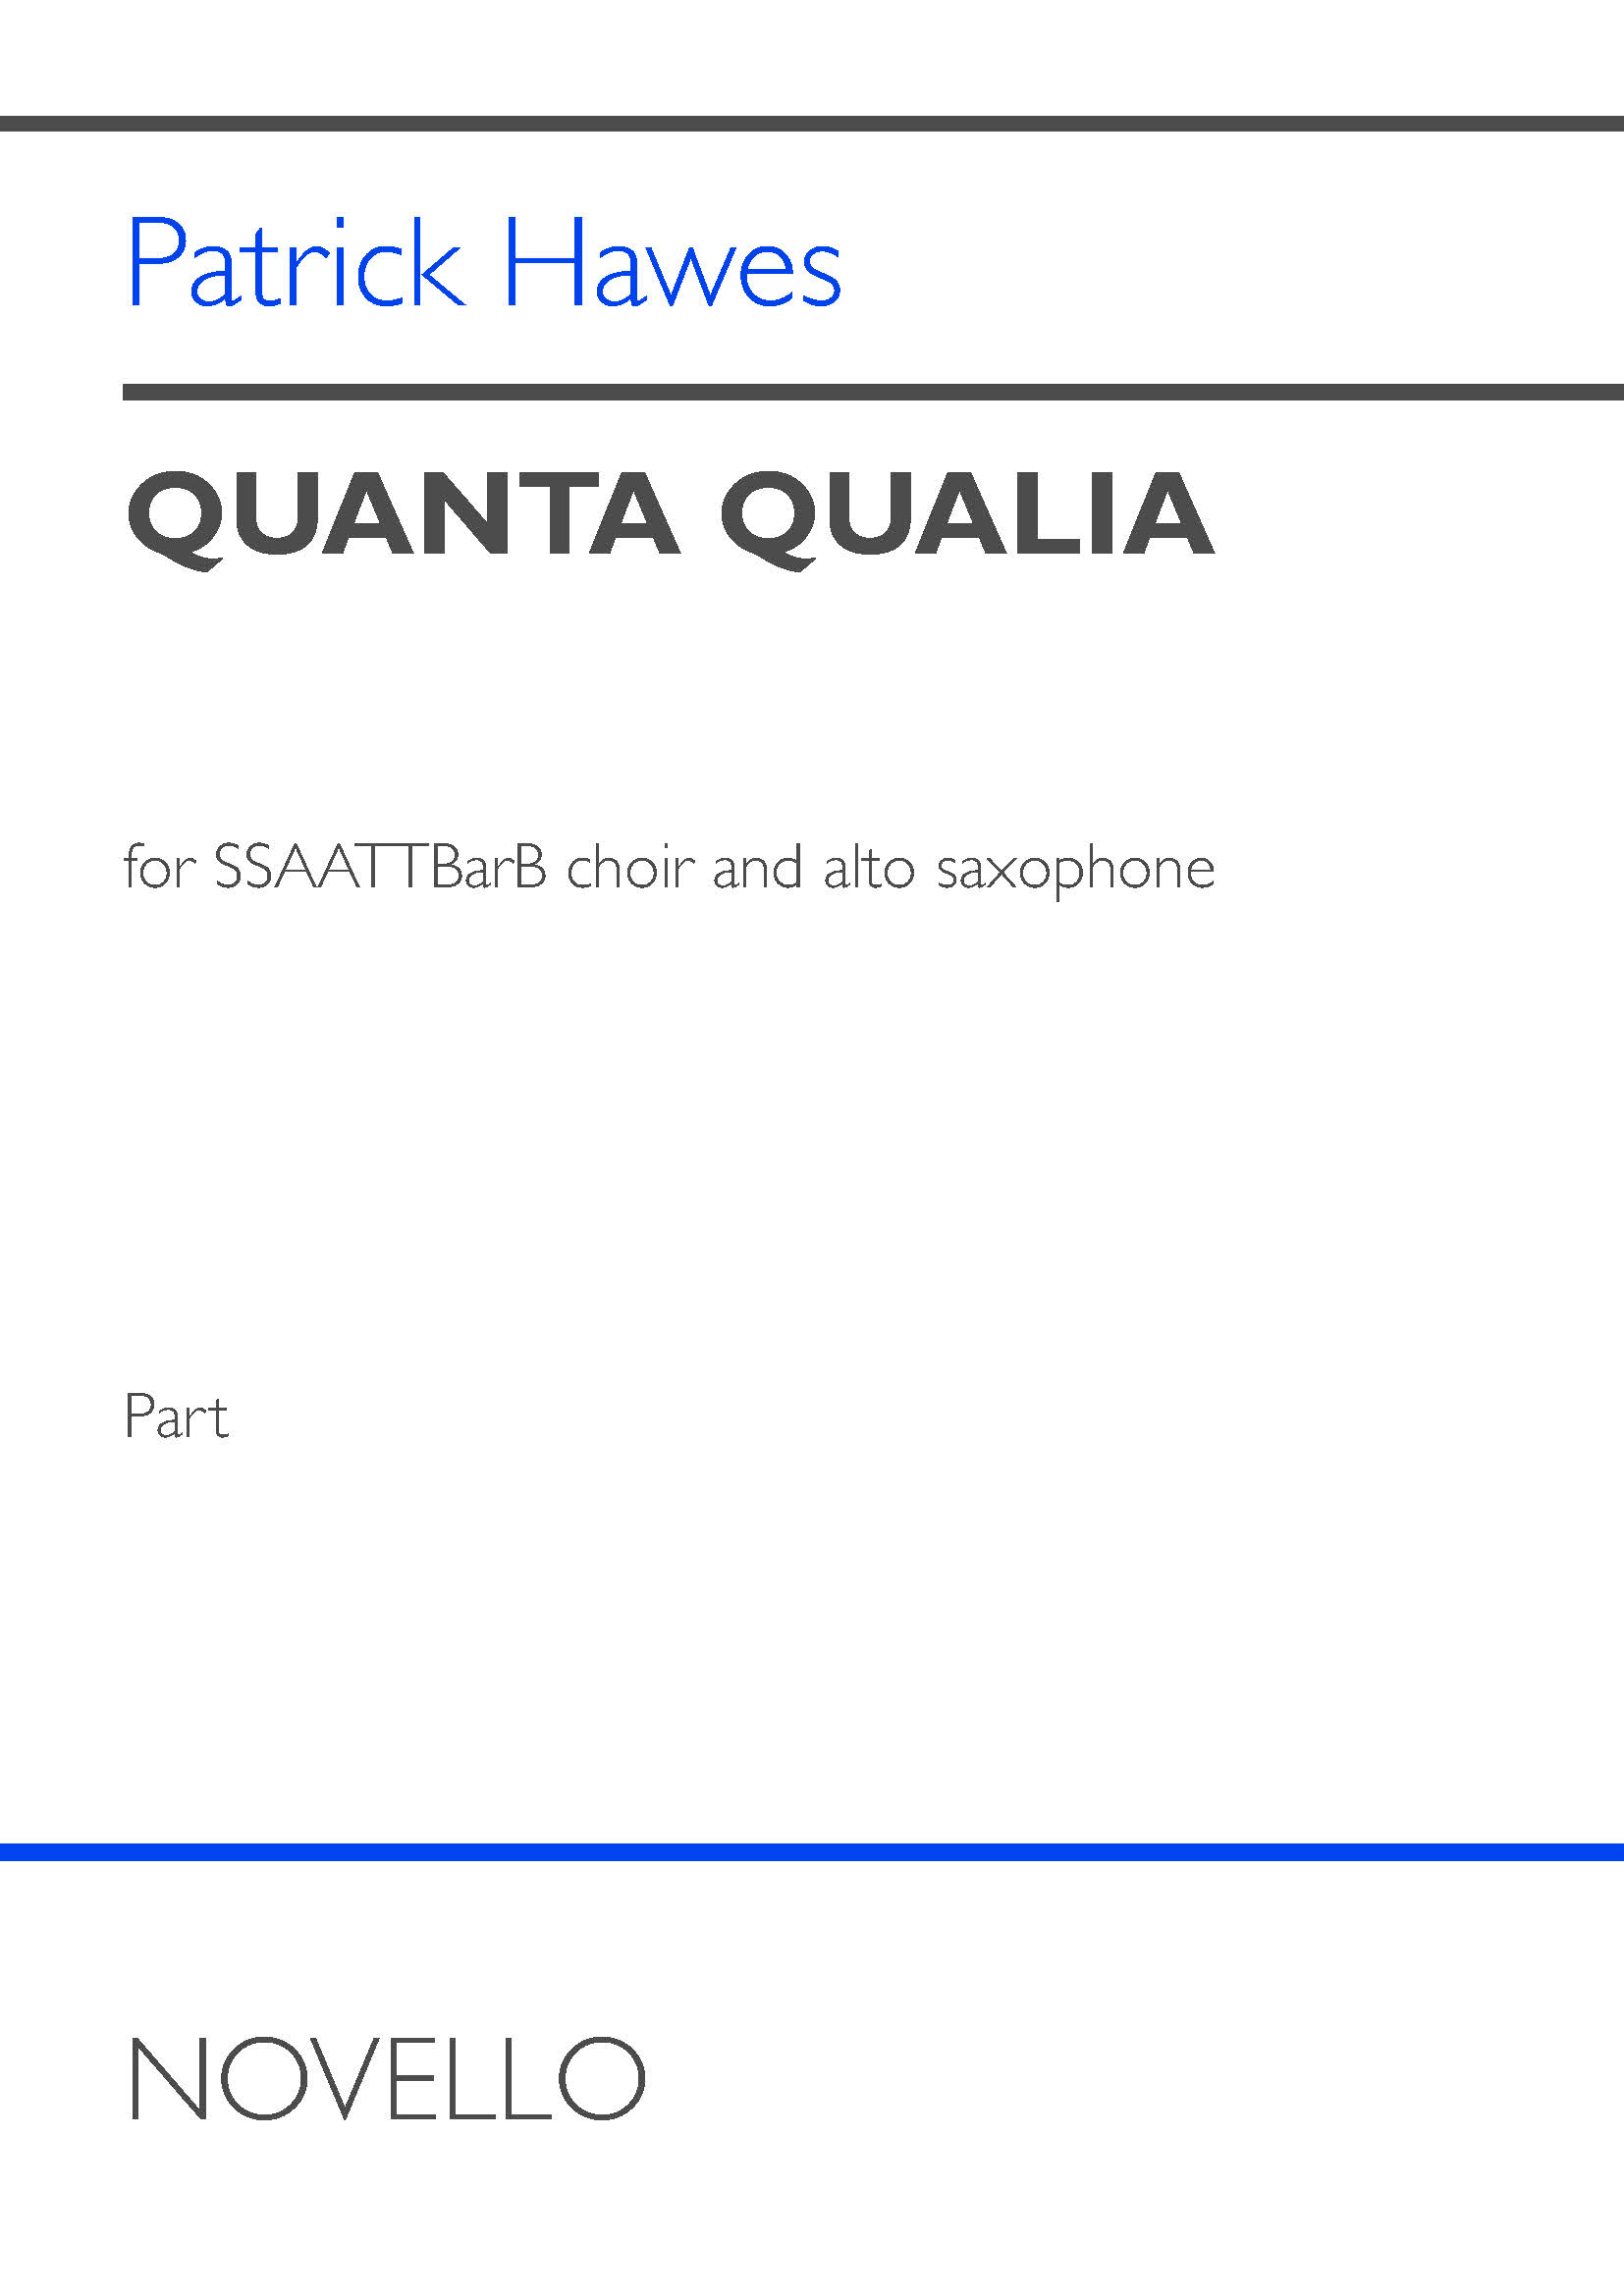 Patrick Hawes: Quanta Qualia (Alto saxophone part): Mixed Choir: Part